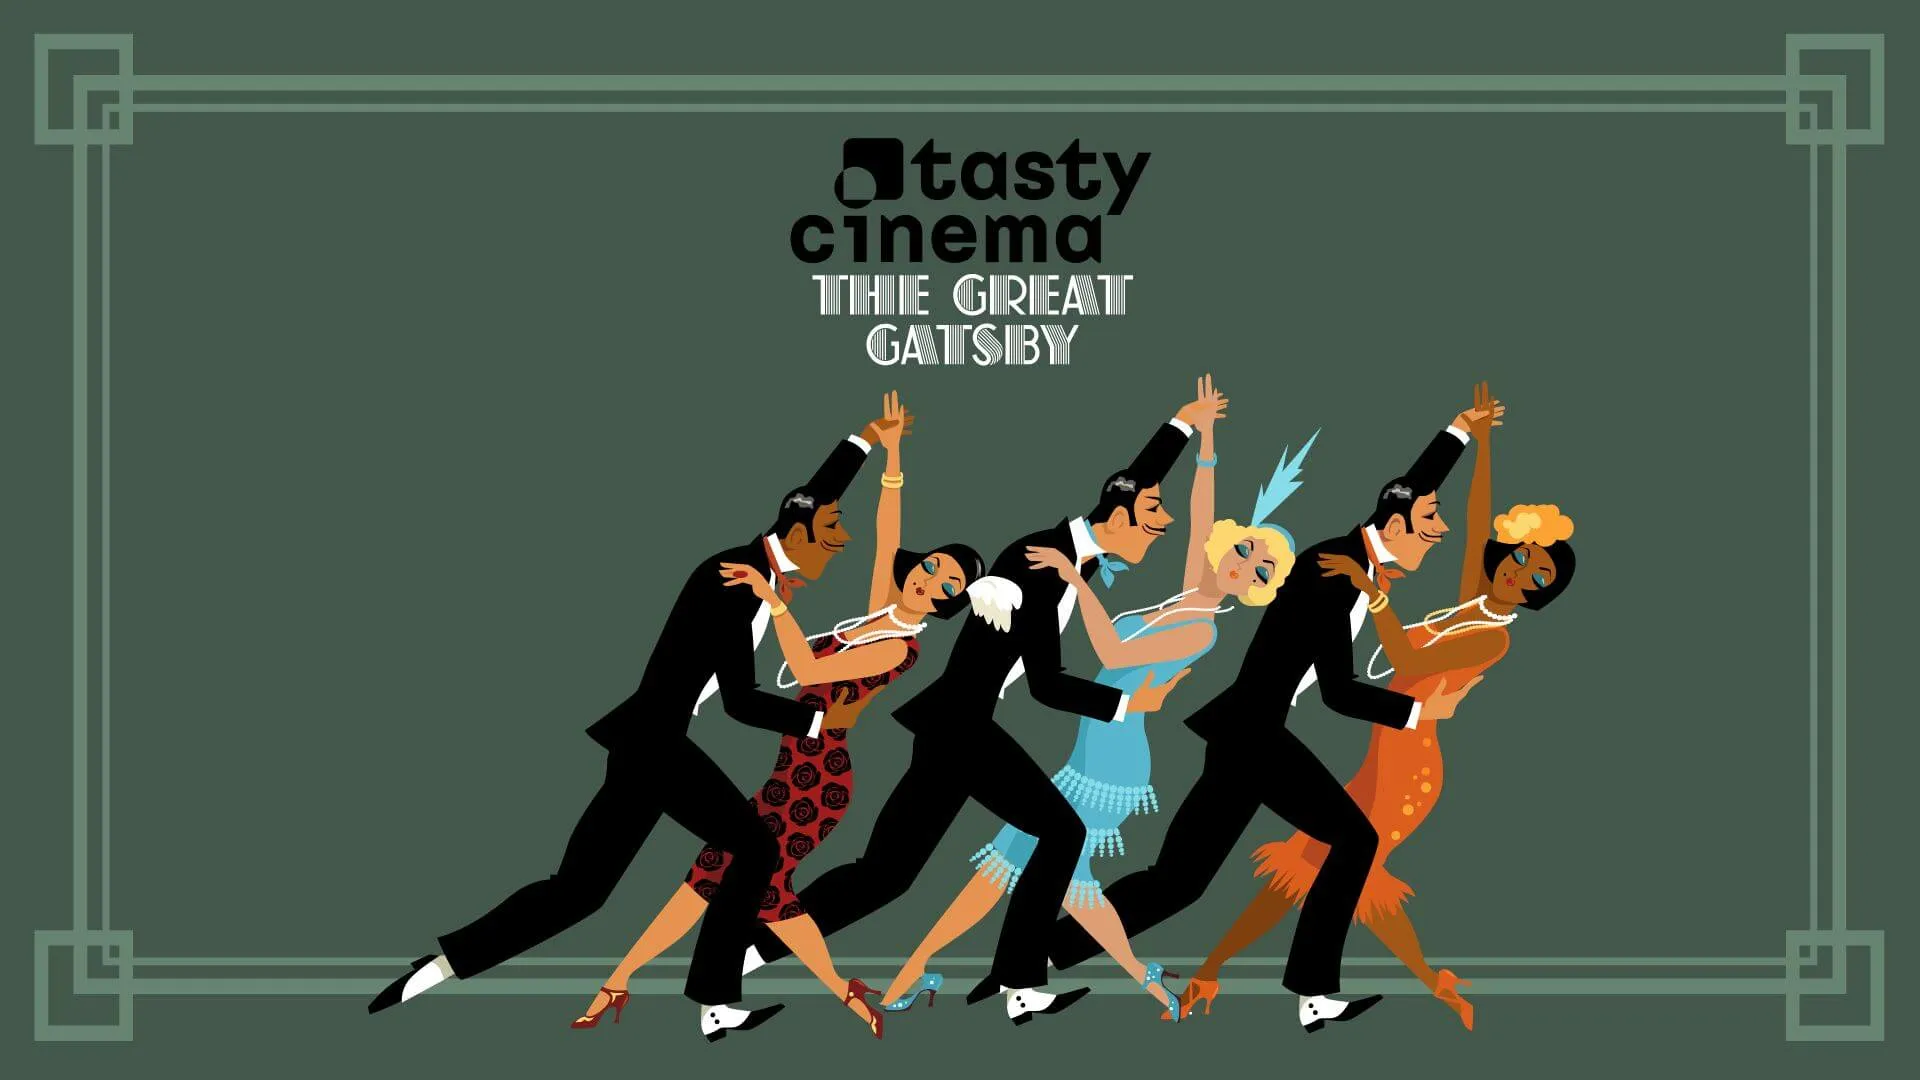 SCOTCH&DINE: TASTY CINEMA: THE GREAT GATSBY